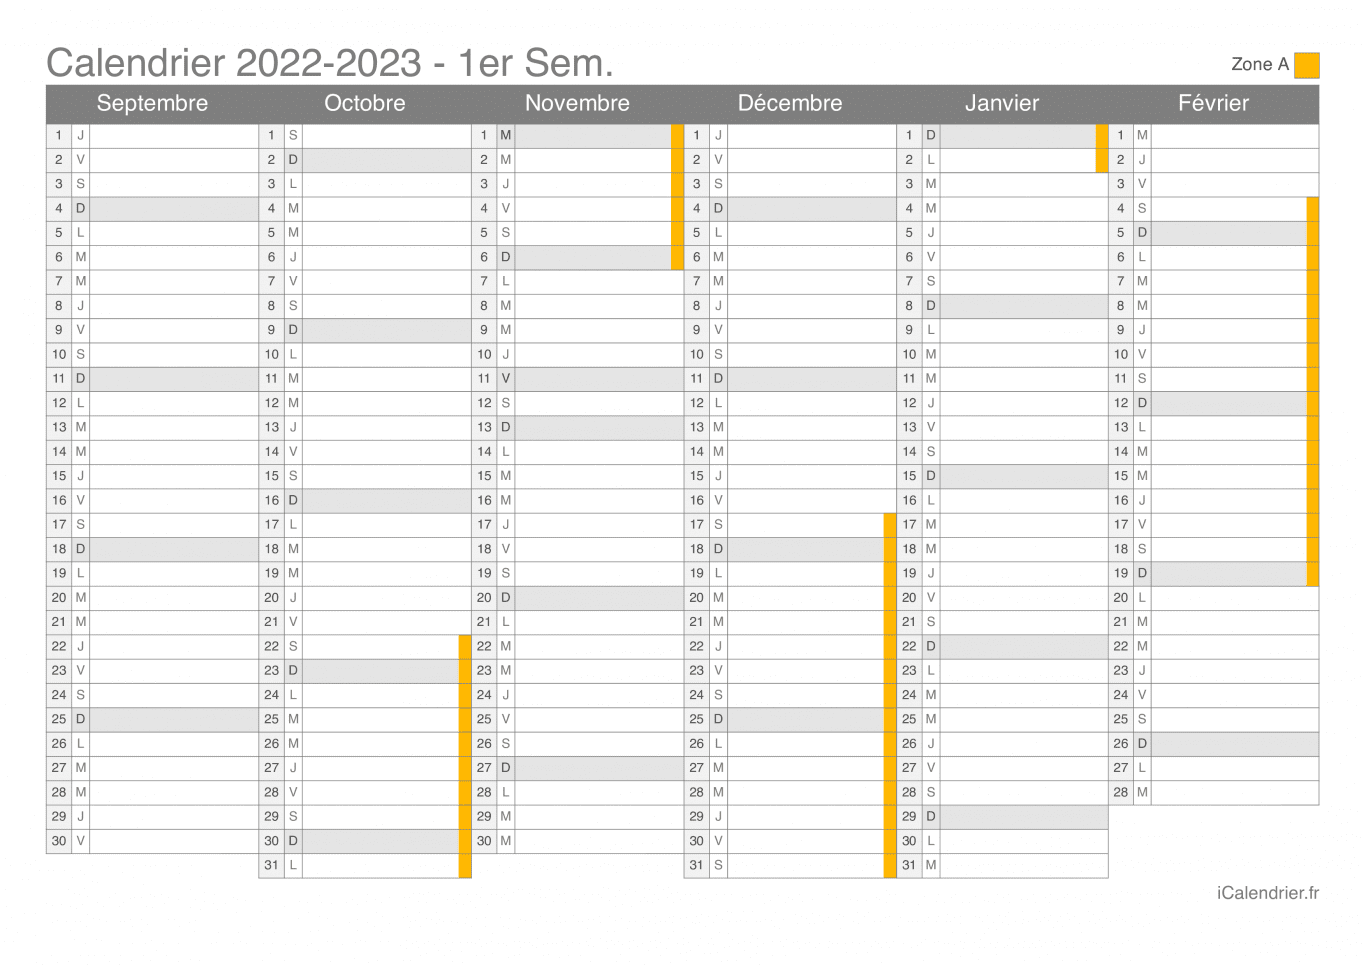 Calendrier des vacances scolaires 2022-2023 par semestre de la zone A